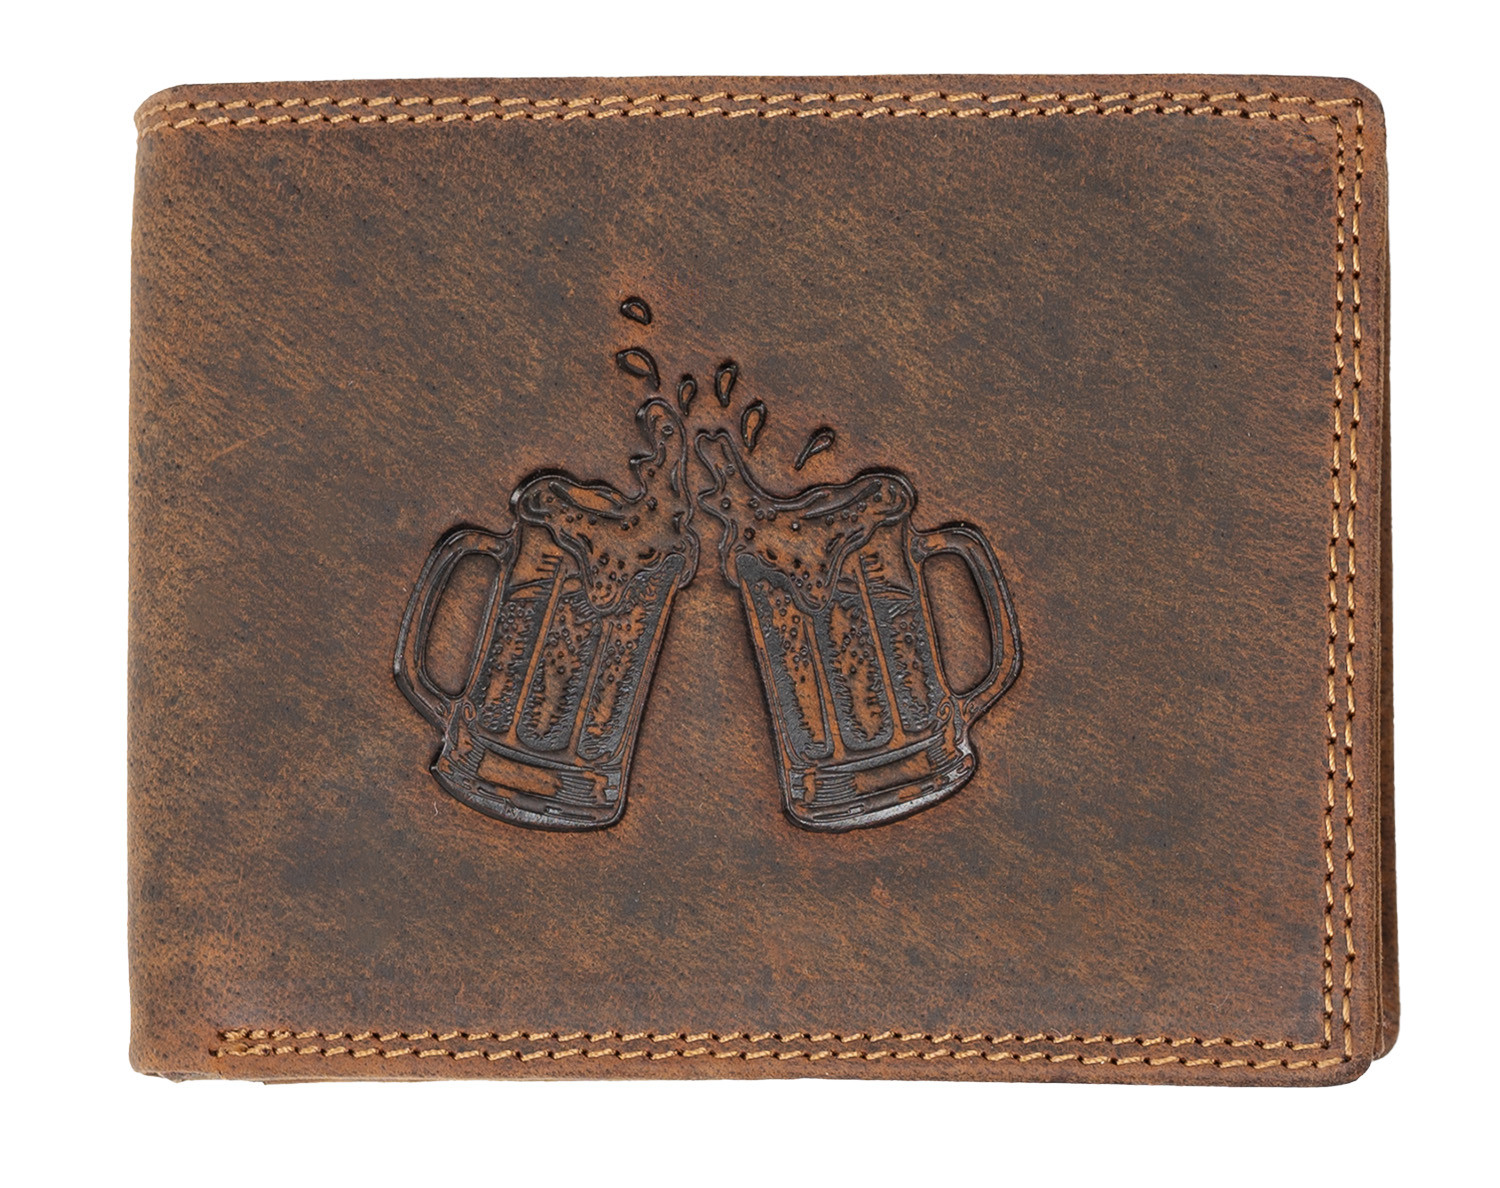 Kožená peněženka Wild s pivem - hnědá